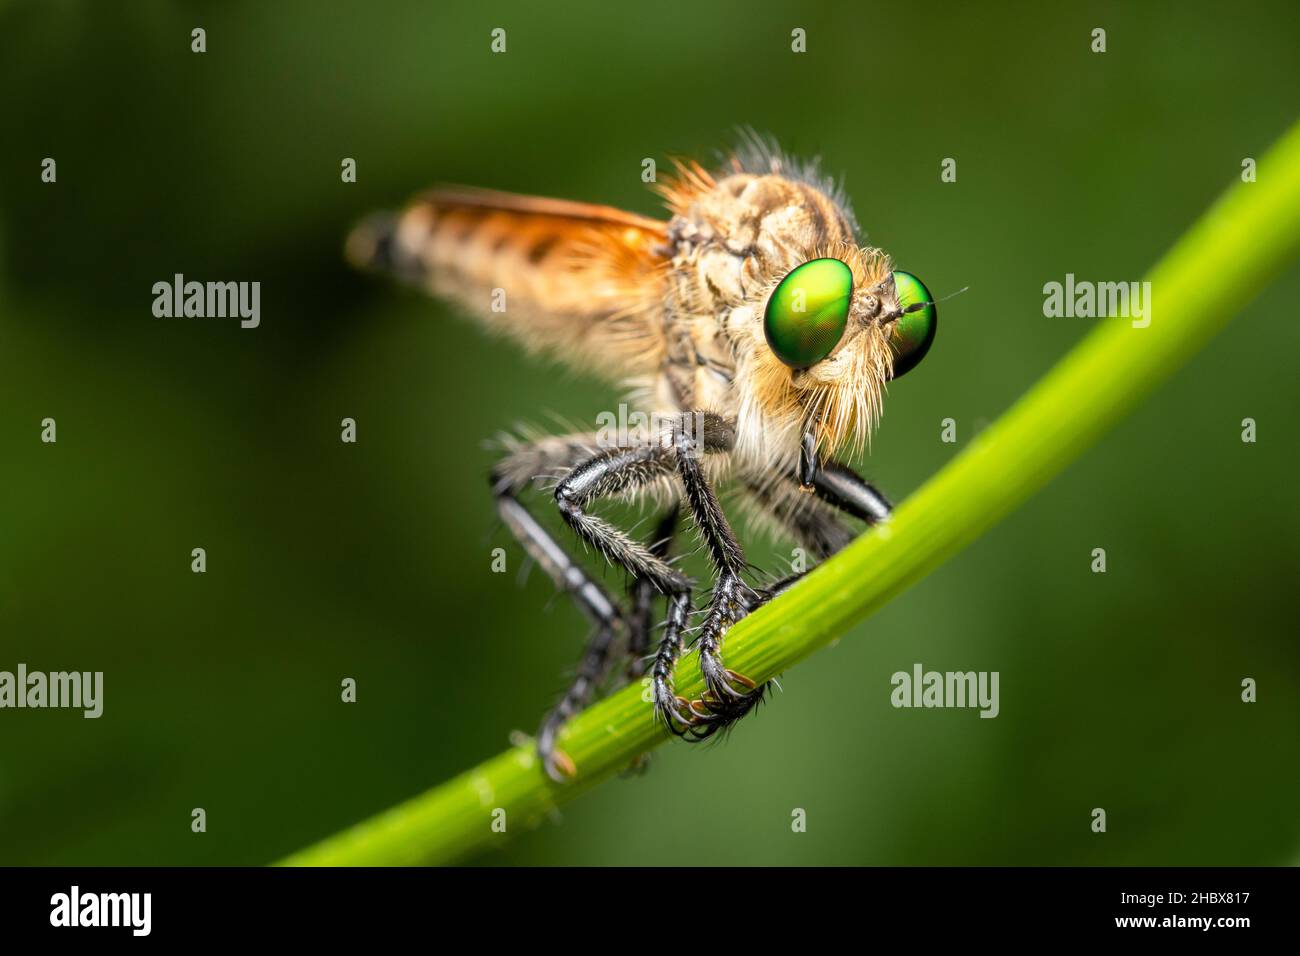 Green eyed assasin fly, Zostera indica,  Satara, Mharashtra, India Stock Photo